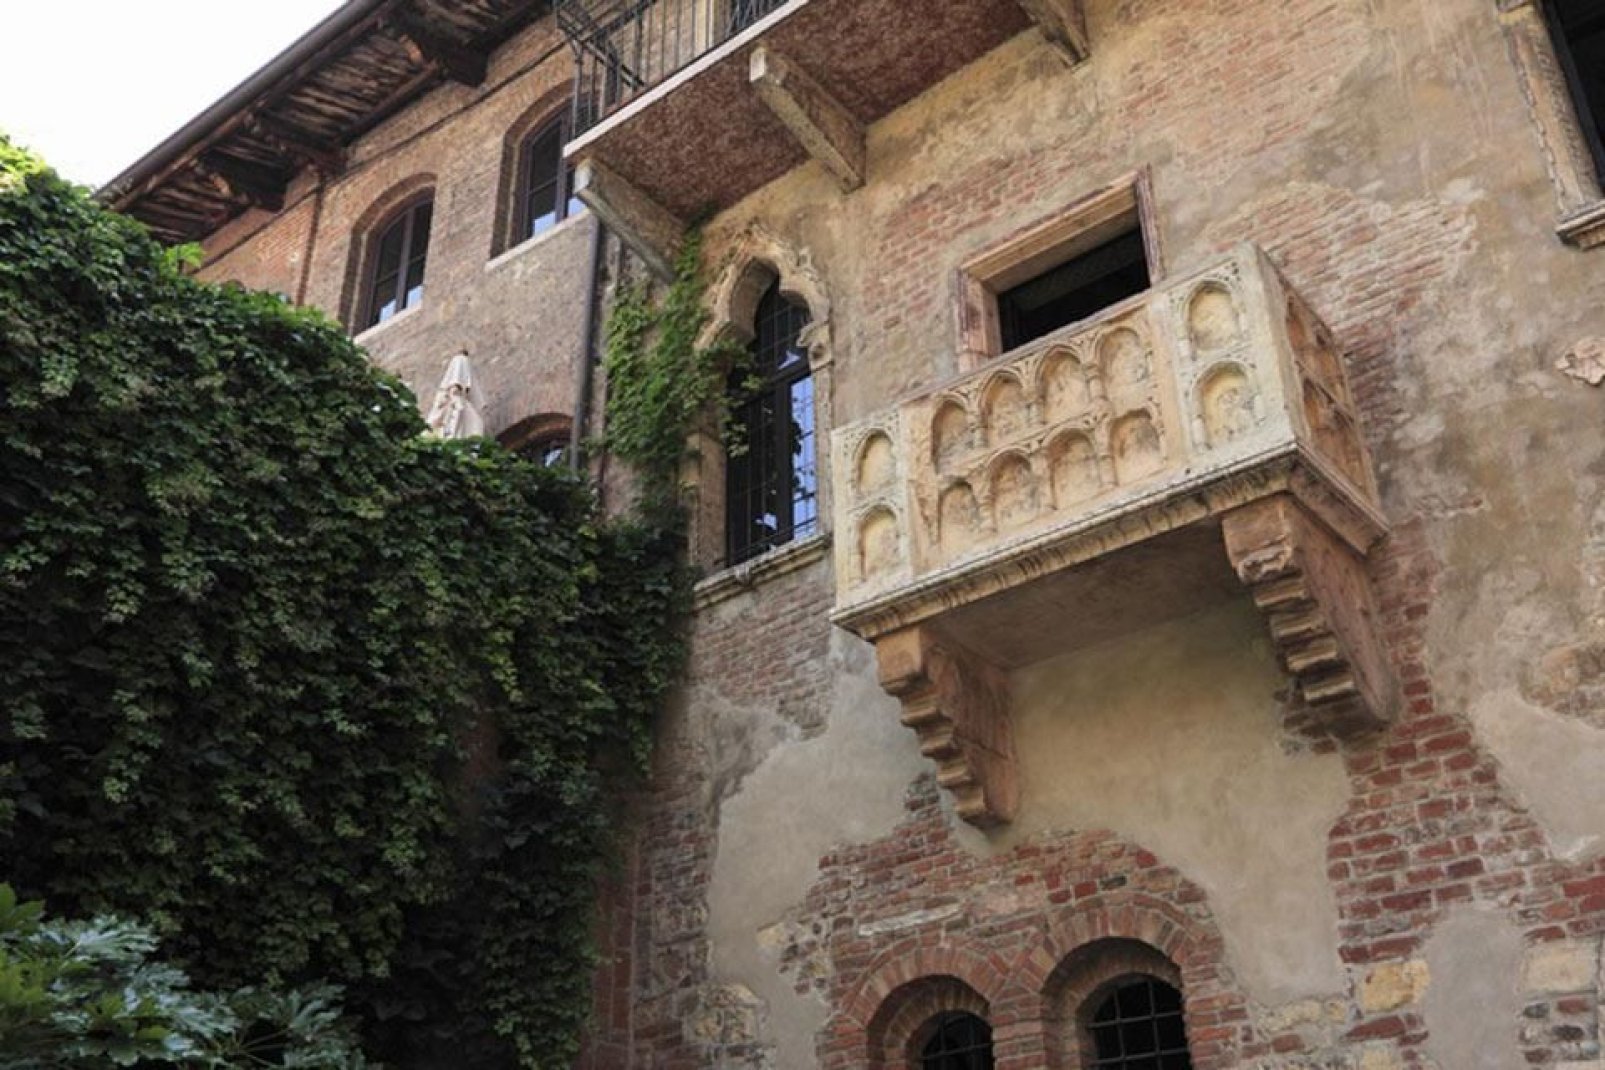 La légende veut que c'est depuis ce balcon que Juliette se pencha pour voir Romeo.